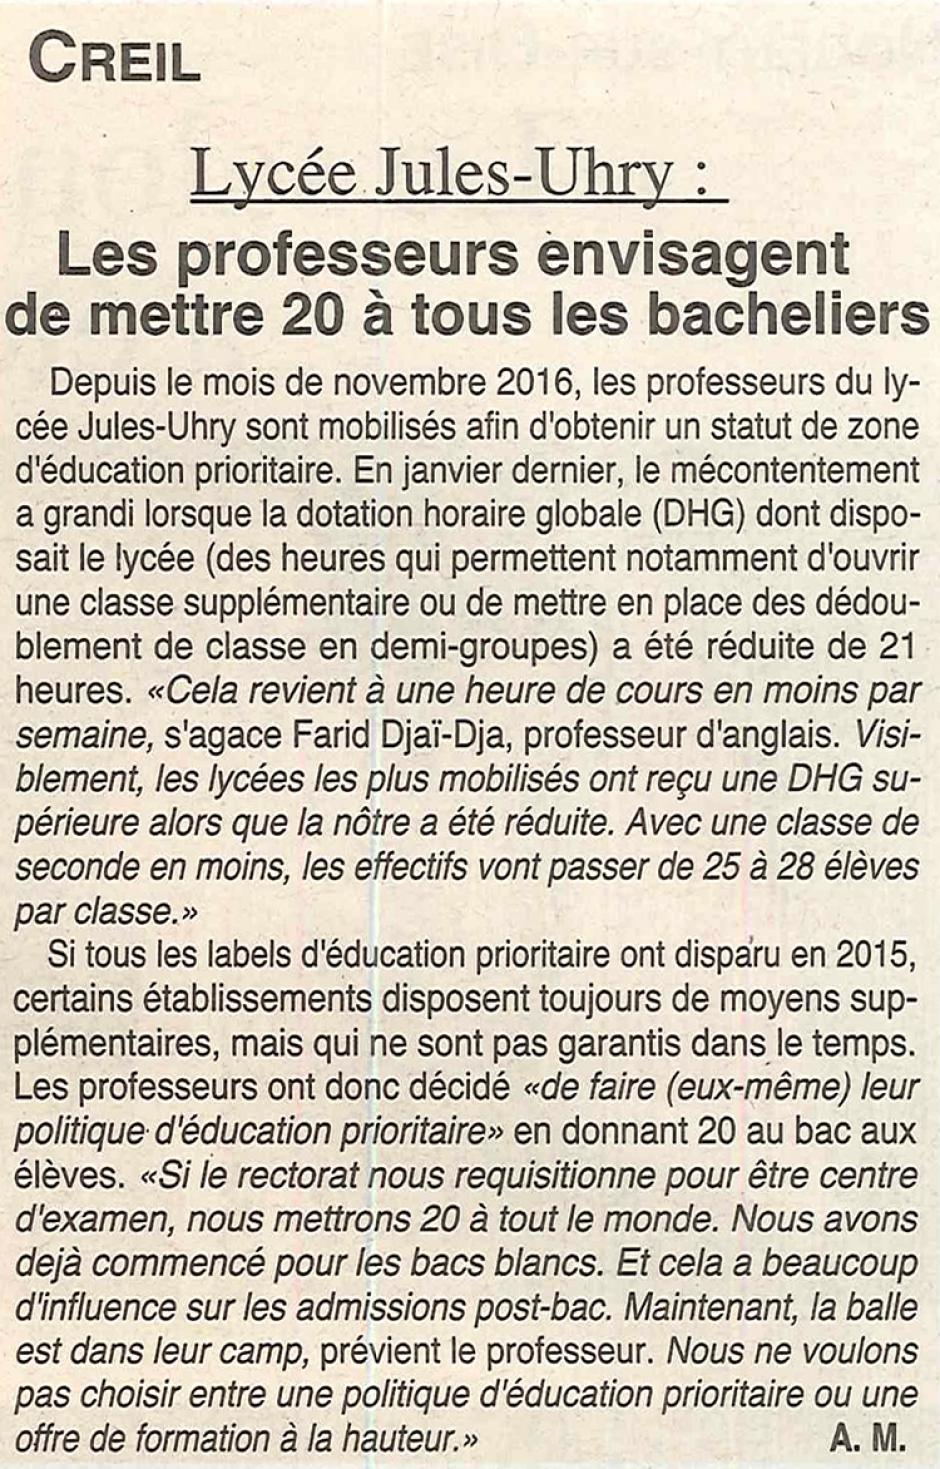 20170322-OH-Creil-Lycée Jules-Uhry : les professeurs envisagent de mettre 20 à tous les bacheliers